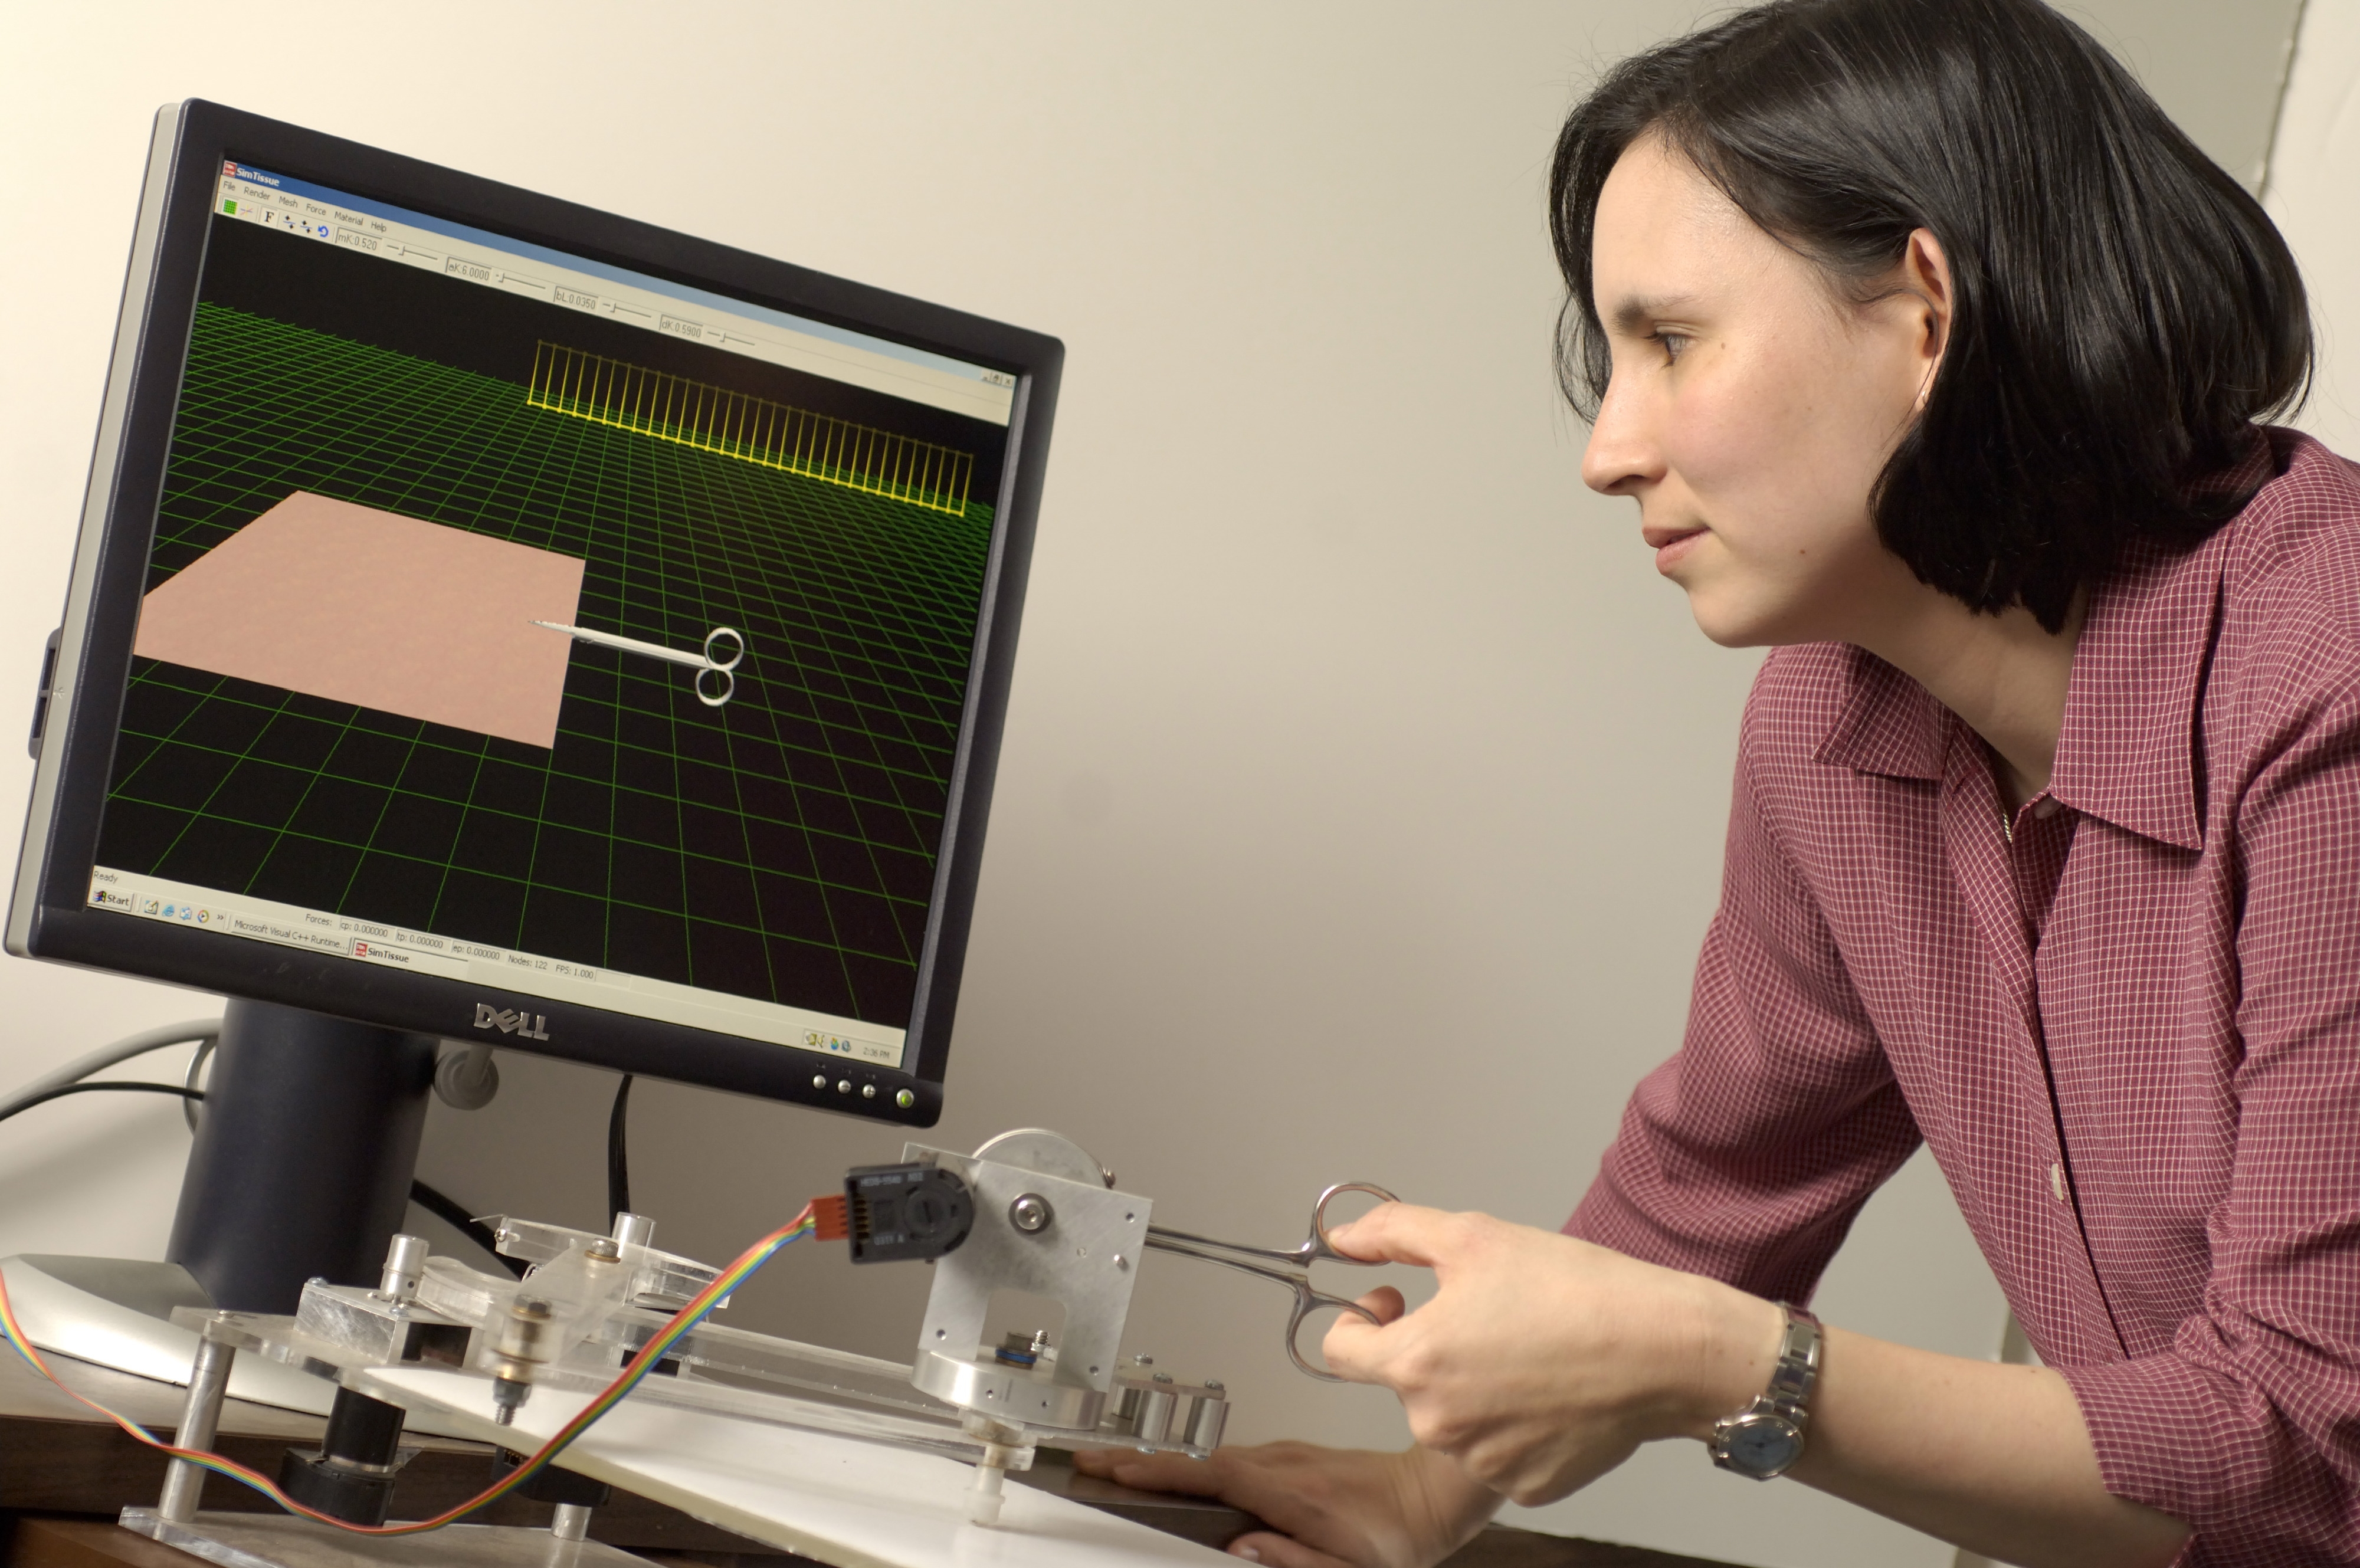 La doctora Allison Okamura, investigadora de la Universidad Johns Hopkins, demuestra un aparato háptico que interactúa con un ambiente virtual para mostrar al usuario las fuerzas cortantes.Cortesía de Will Kirk.